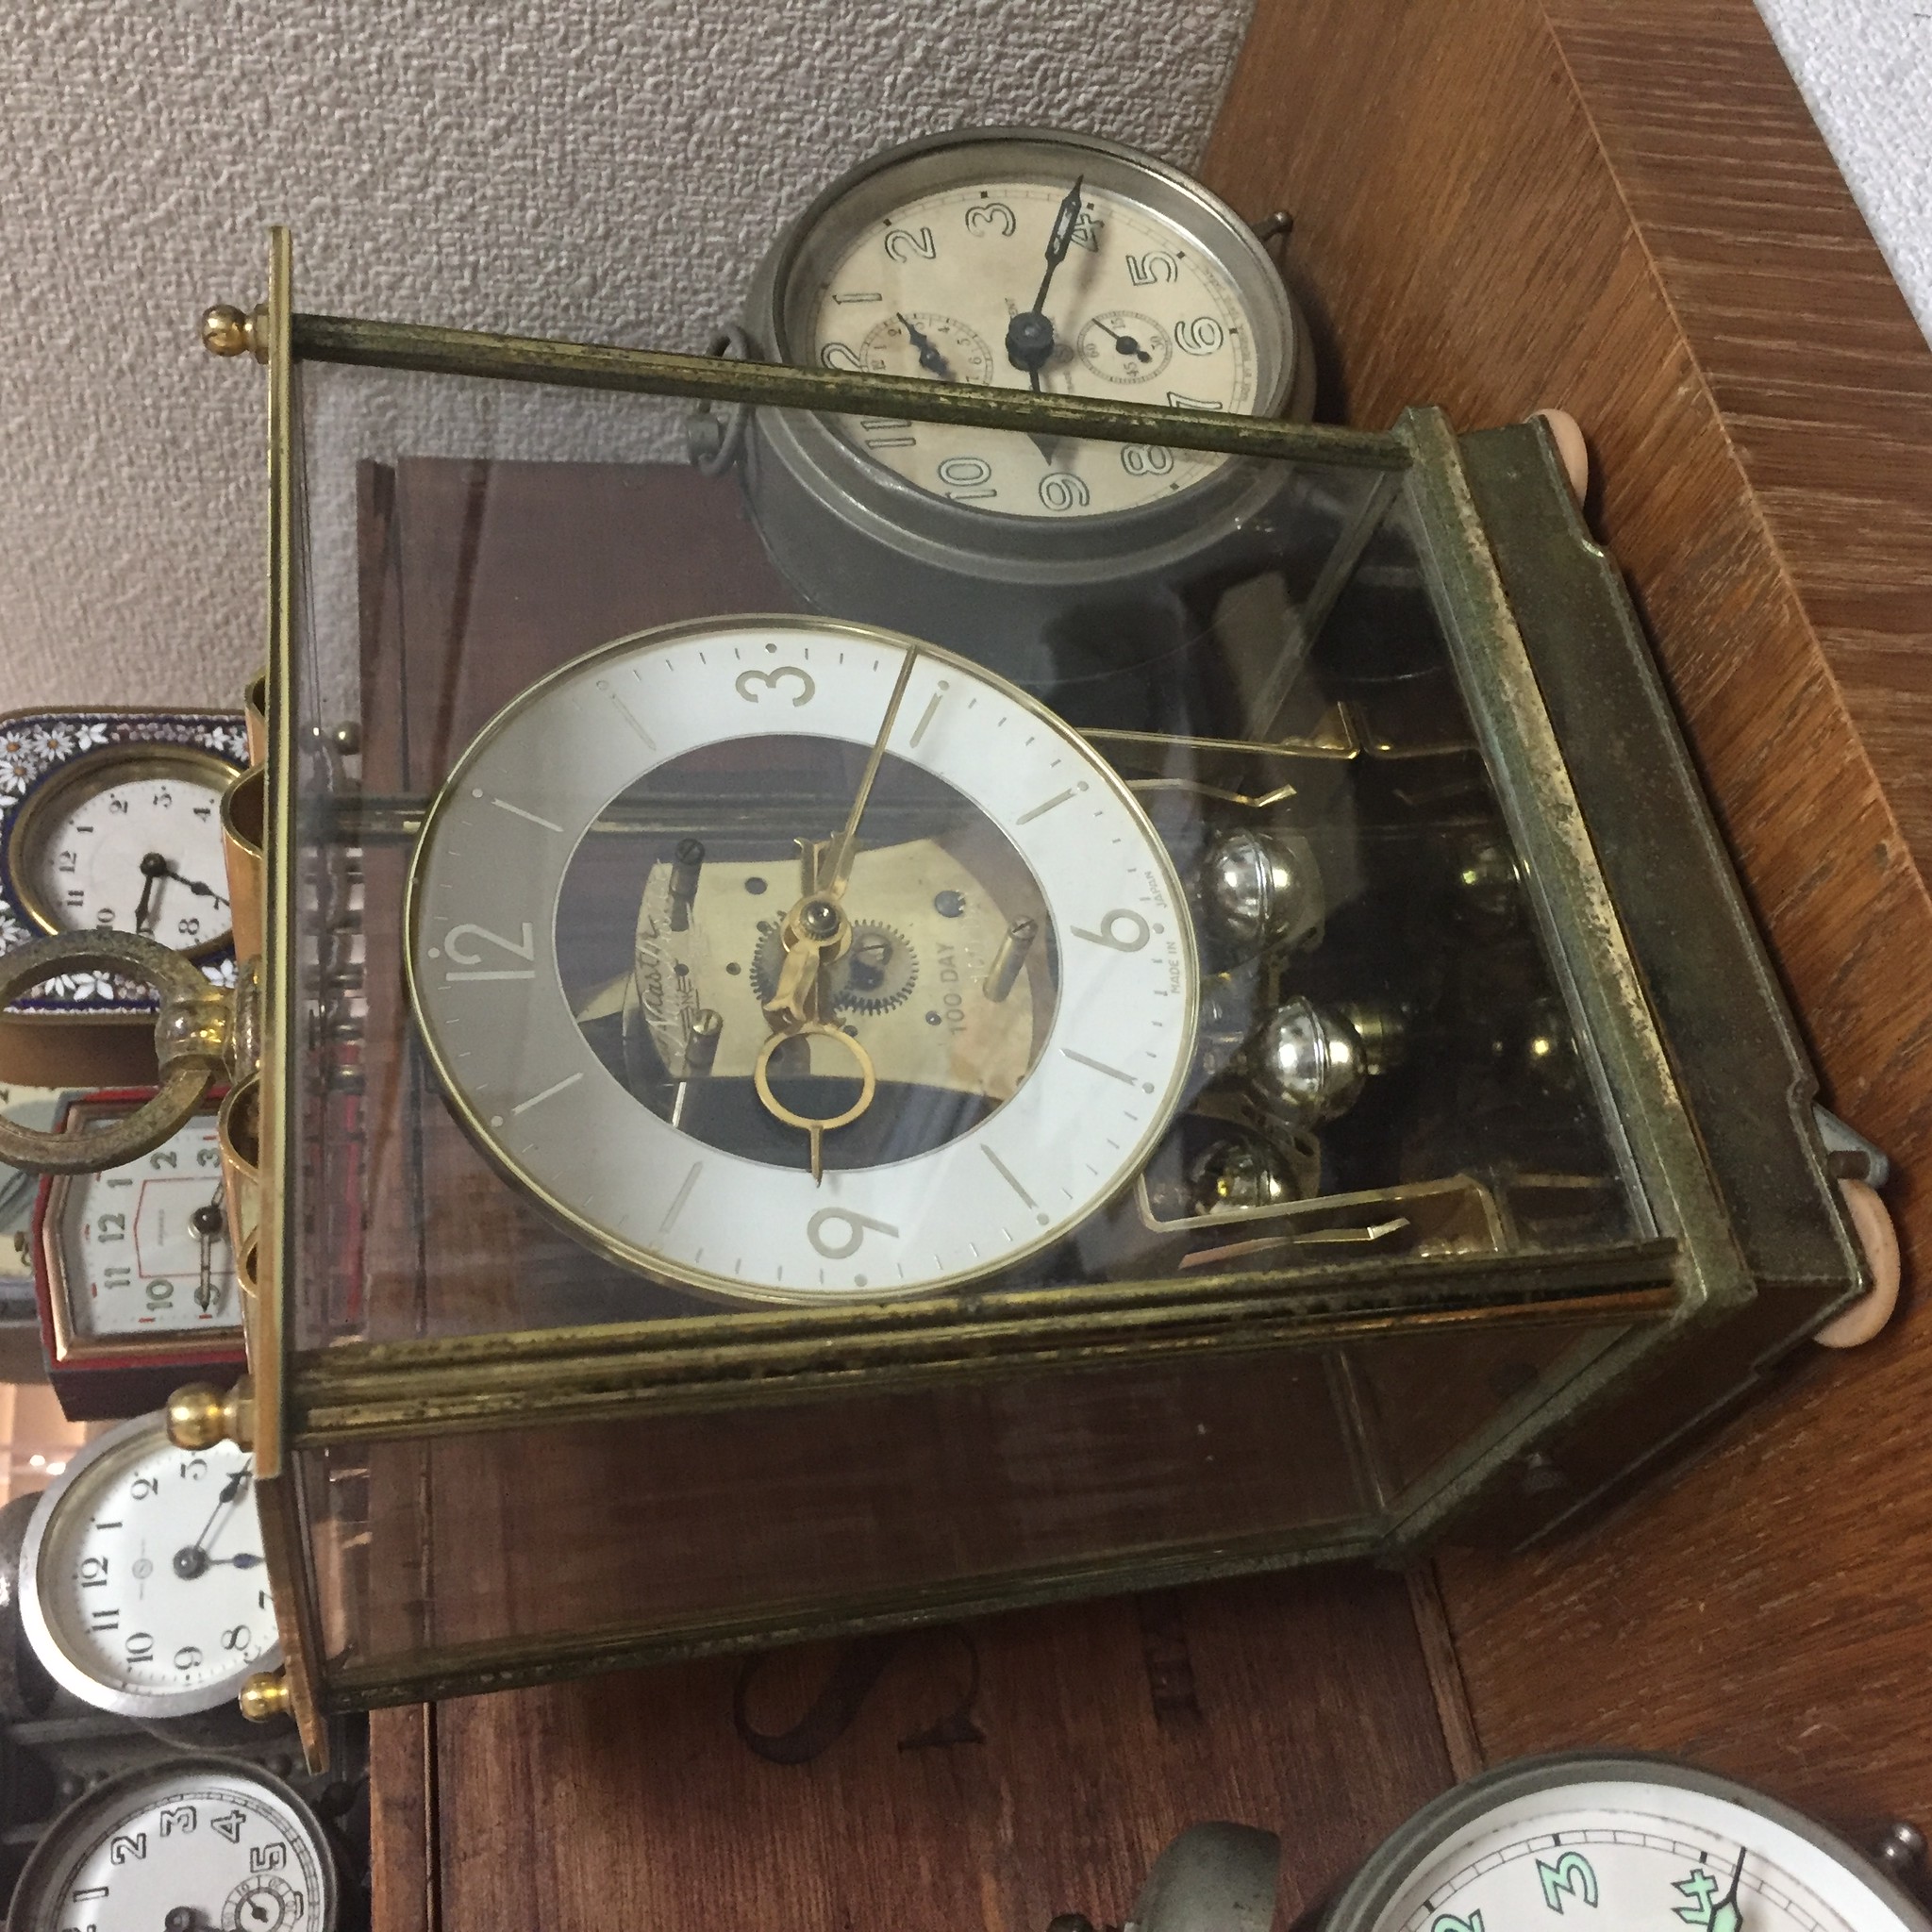 日新時計 New Master 100day回転振り子式時計とスヌーピーの時計 路地裏の骨董カフェshop